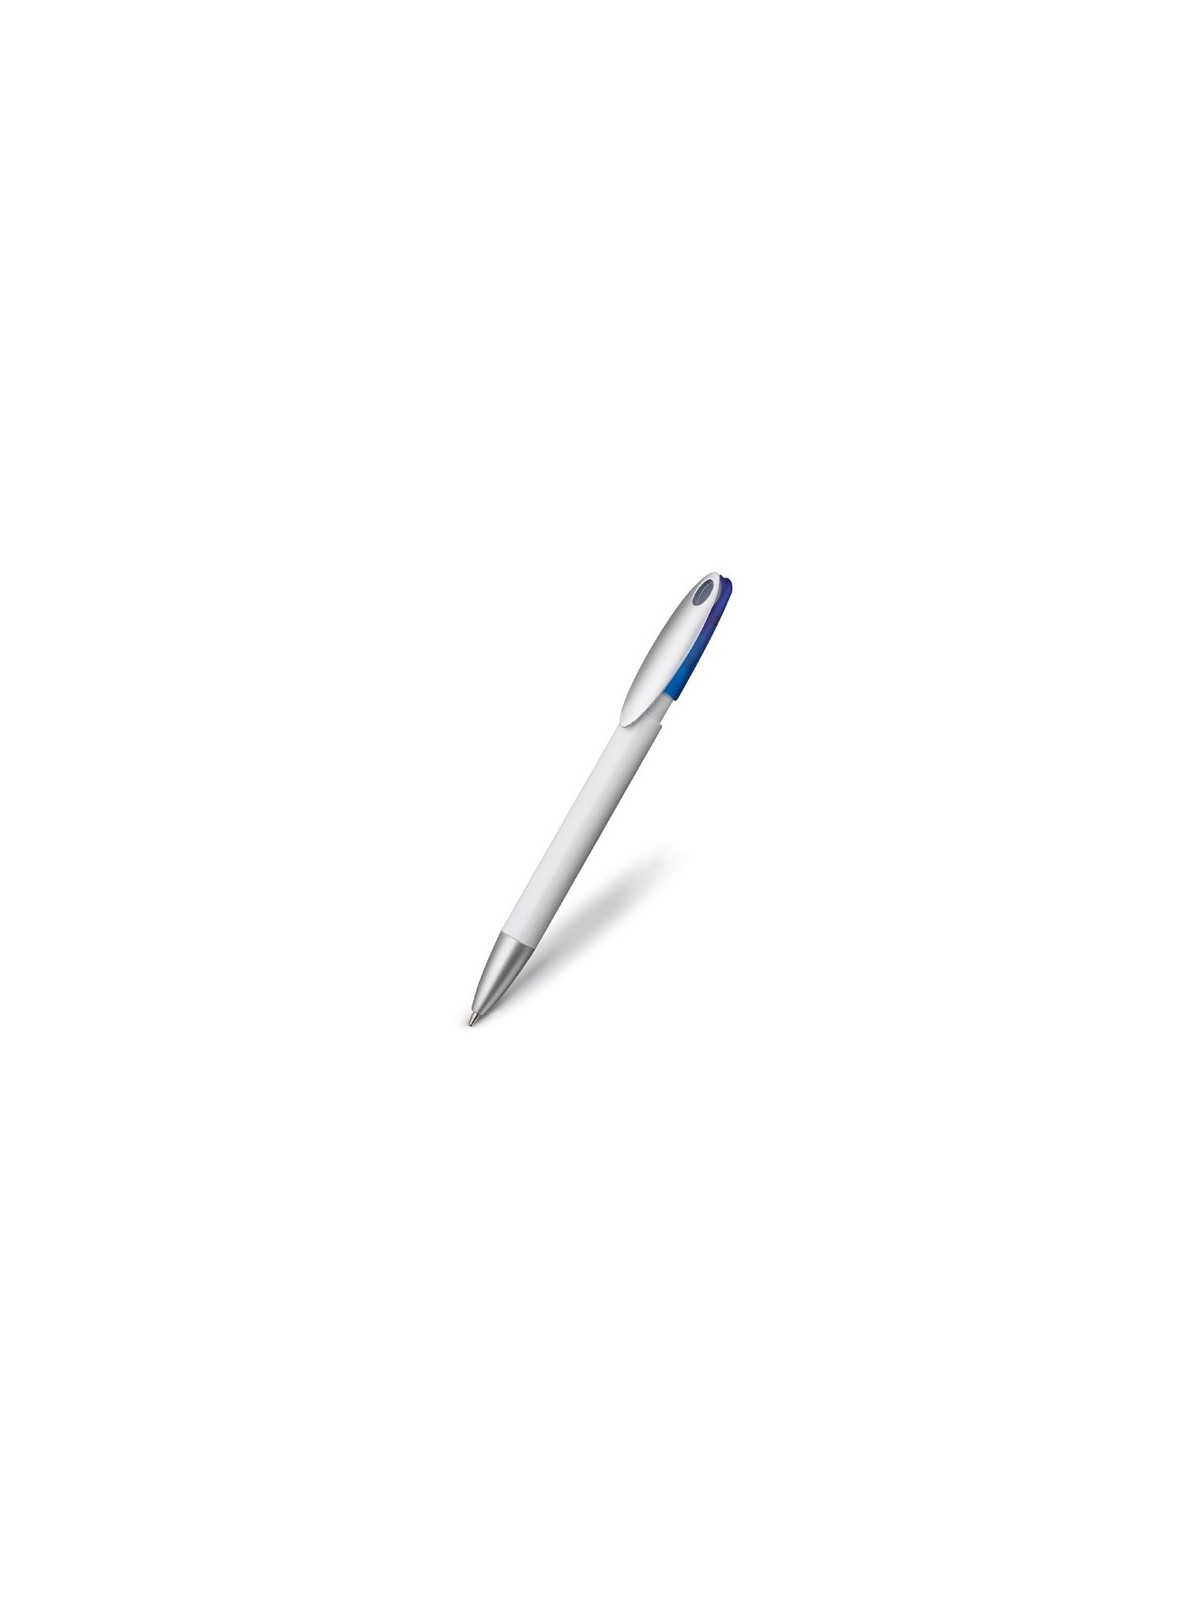 36-595 Stylo à bille Special Concept pen Five personnalisé